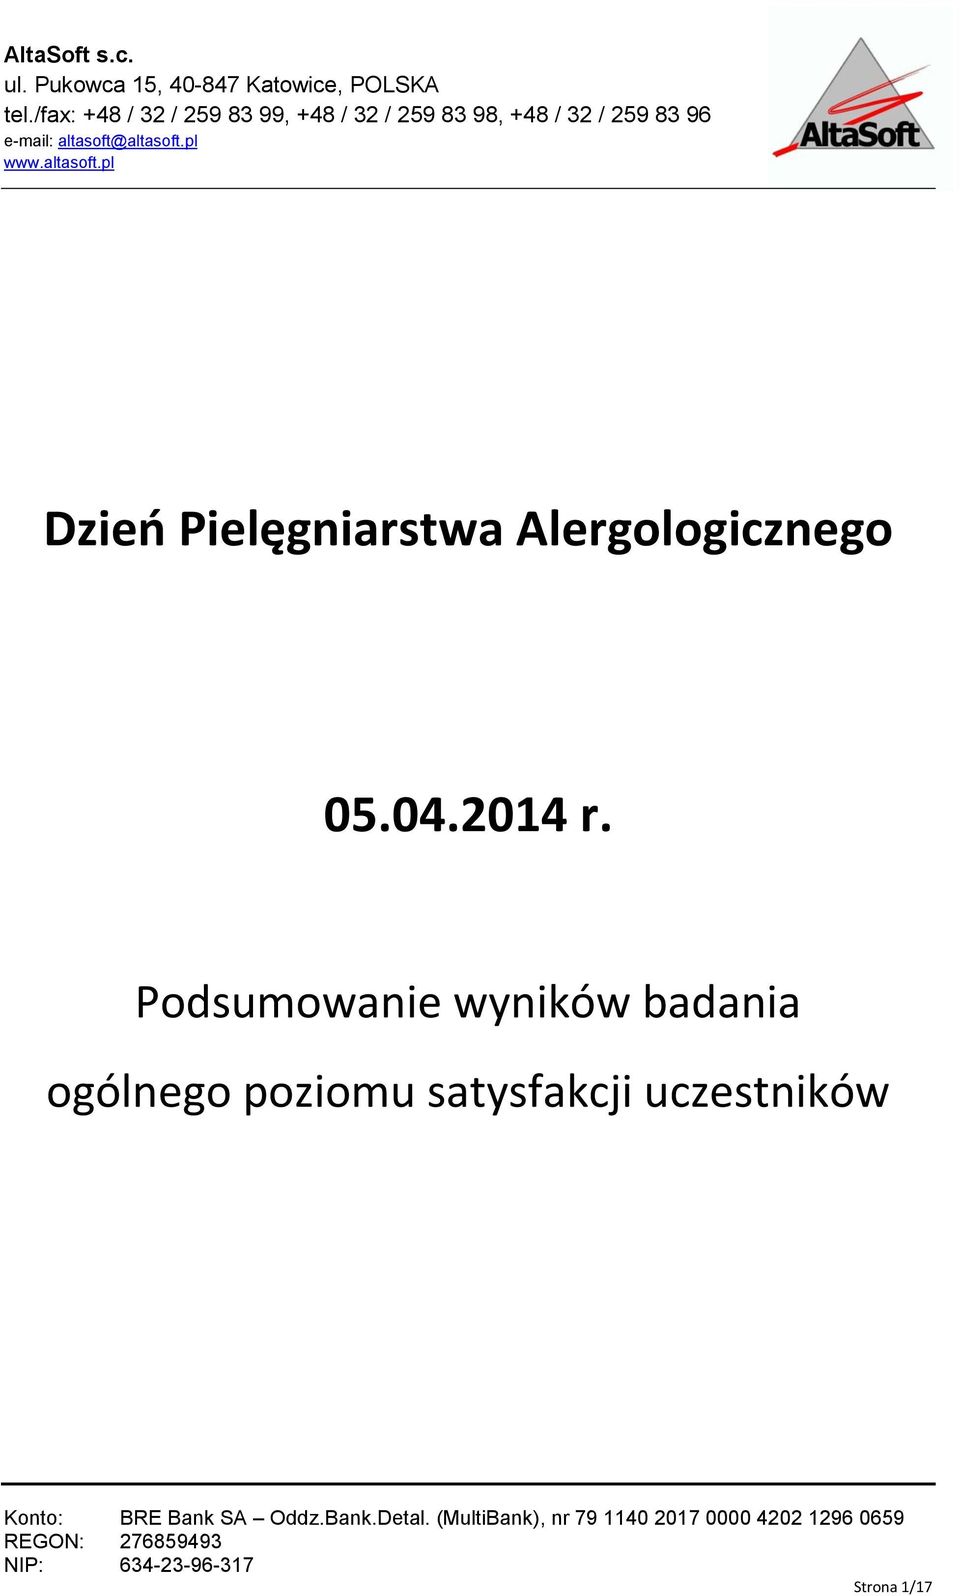 altasoft.pl Dzień Pielęgniarstwa Alergologicznego 05.04.2014 r.